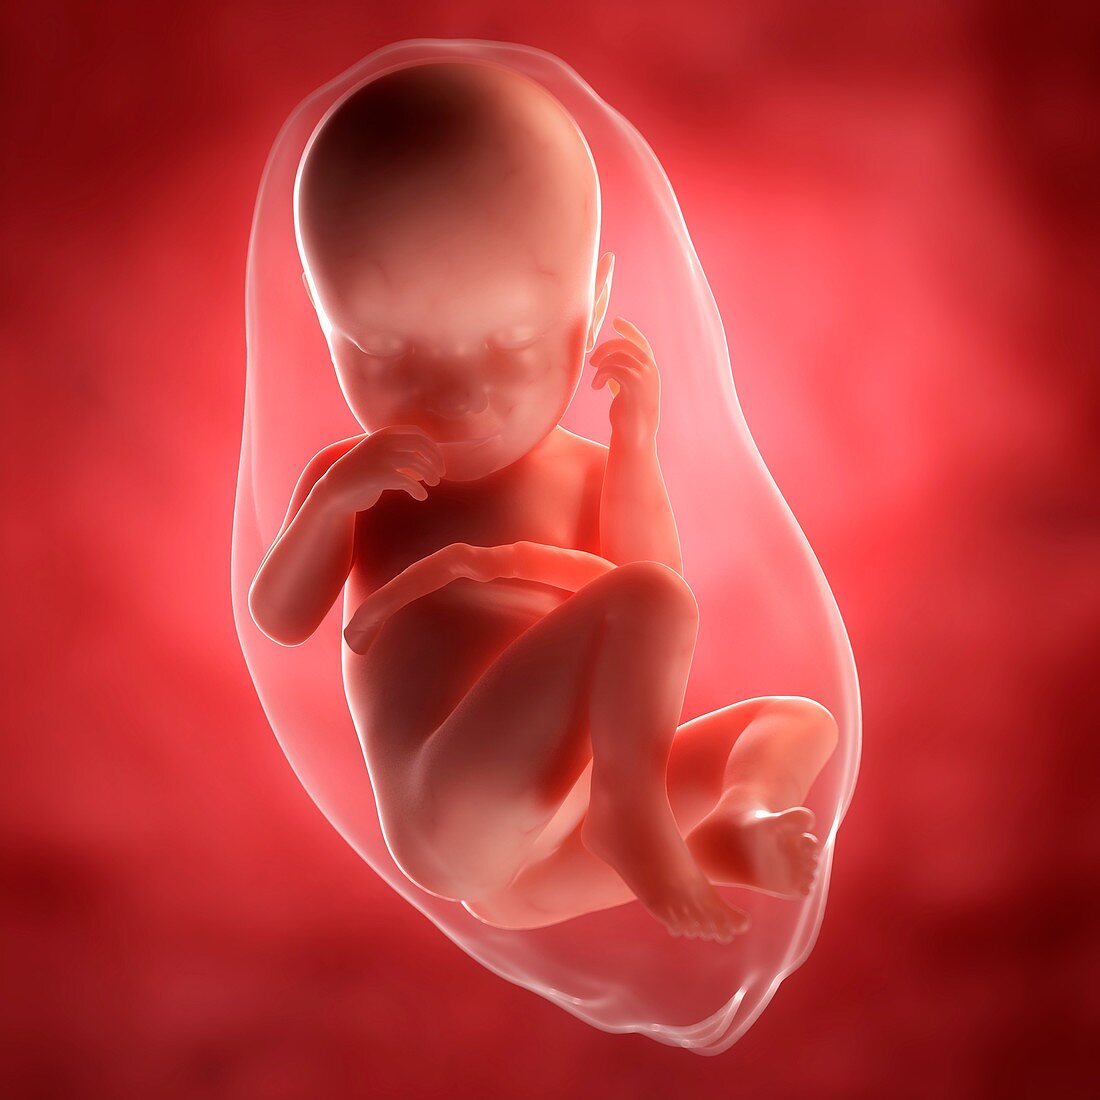 Foetus at 37 weeks,artwork